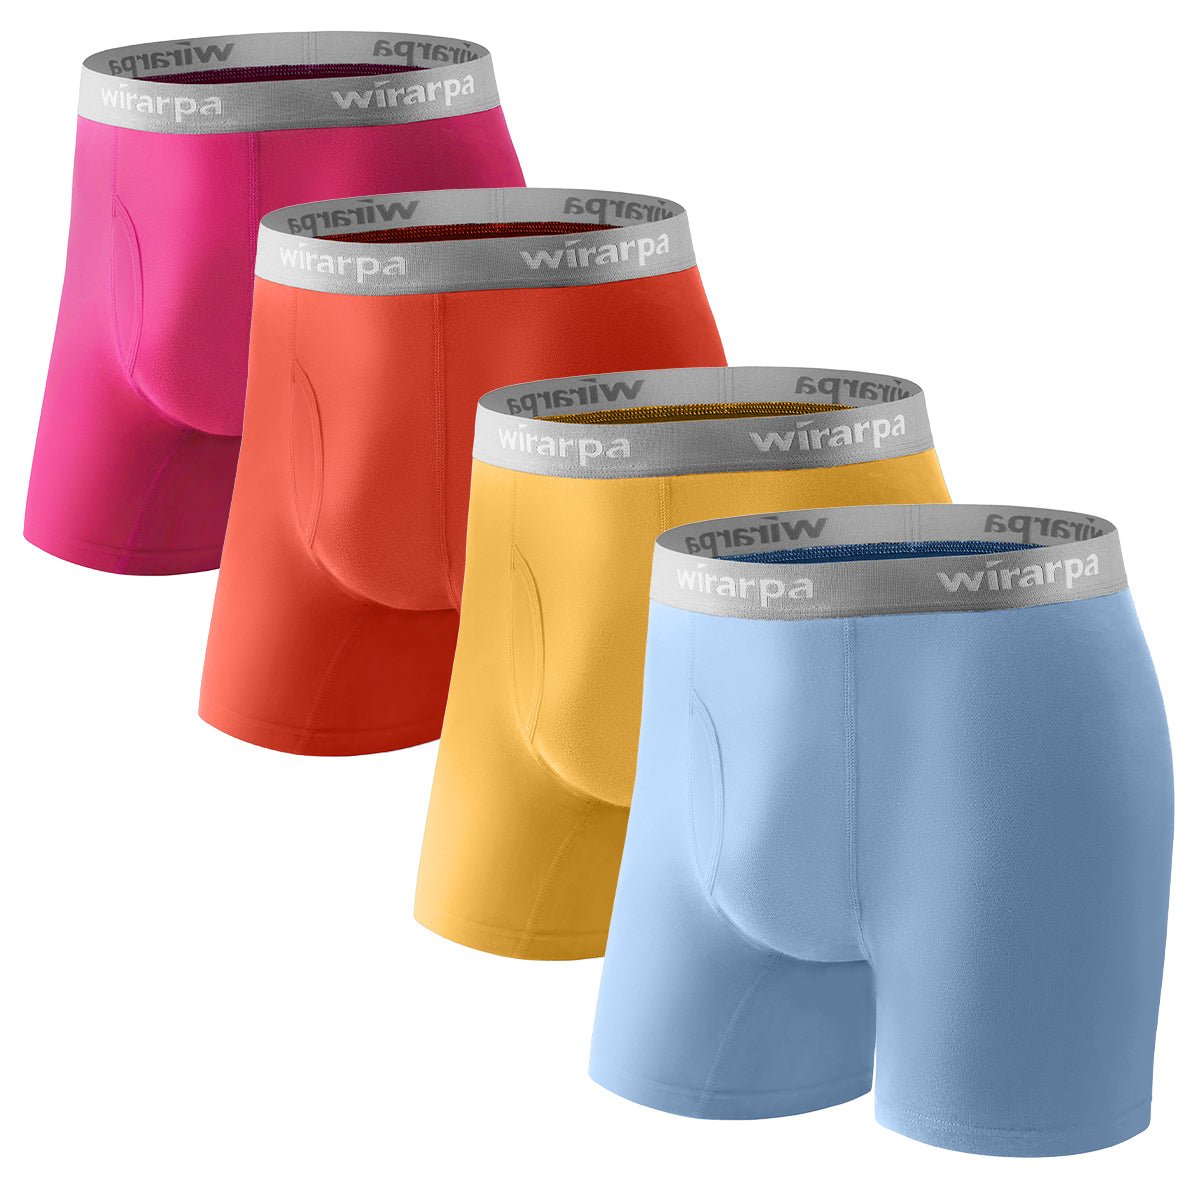 wirarpa Men's Cotton Boxer Briefs Supportive Short Leg Underwear